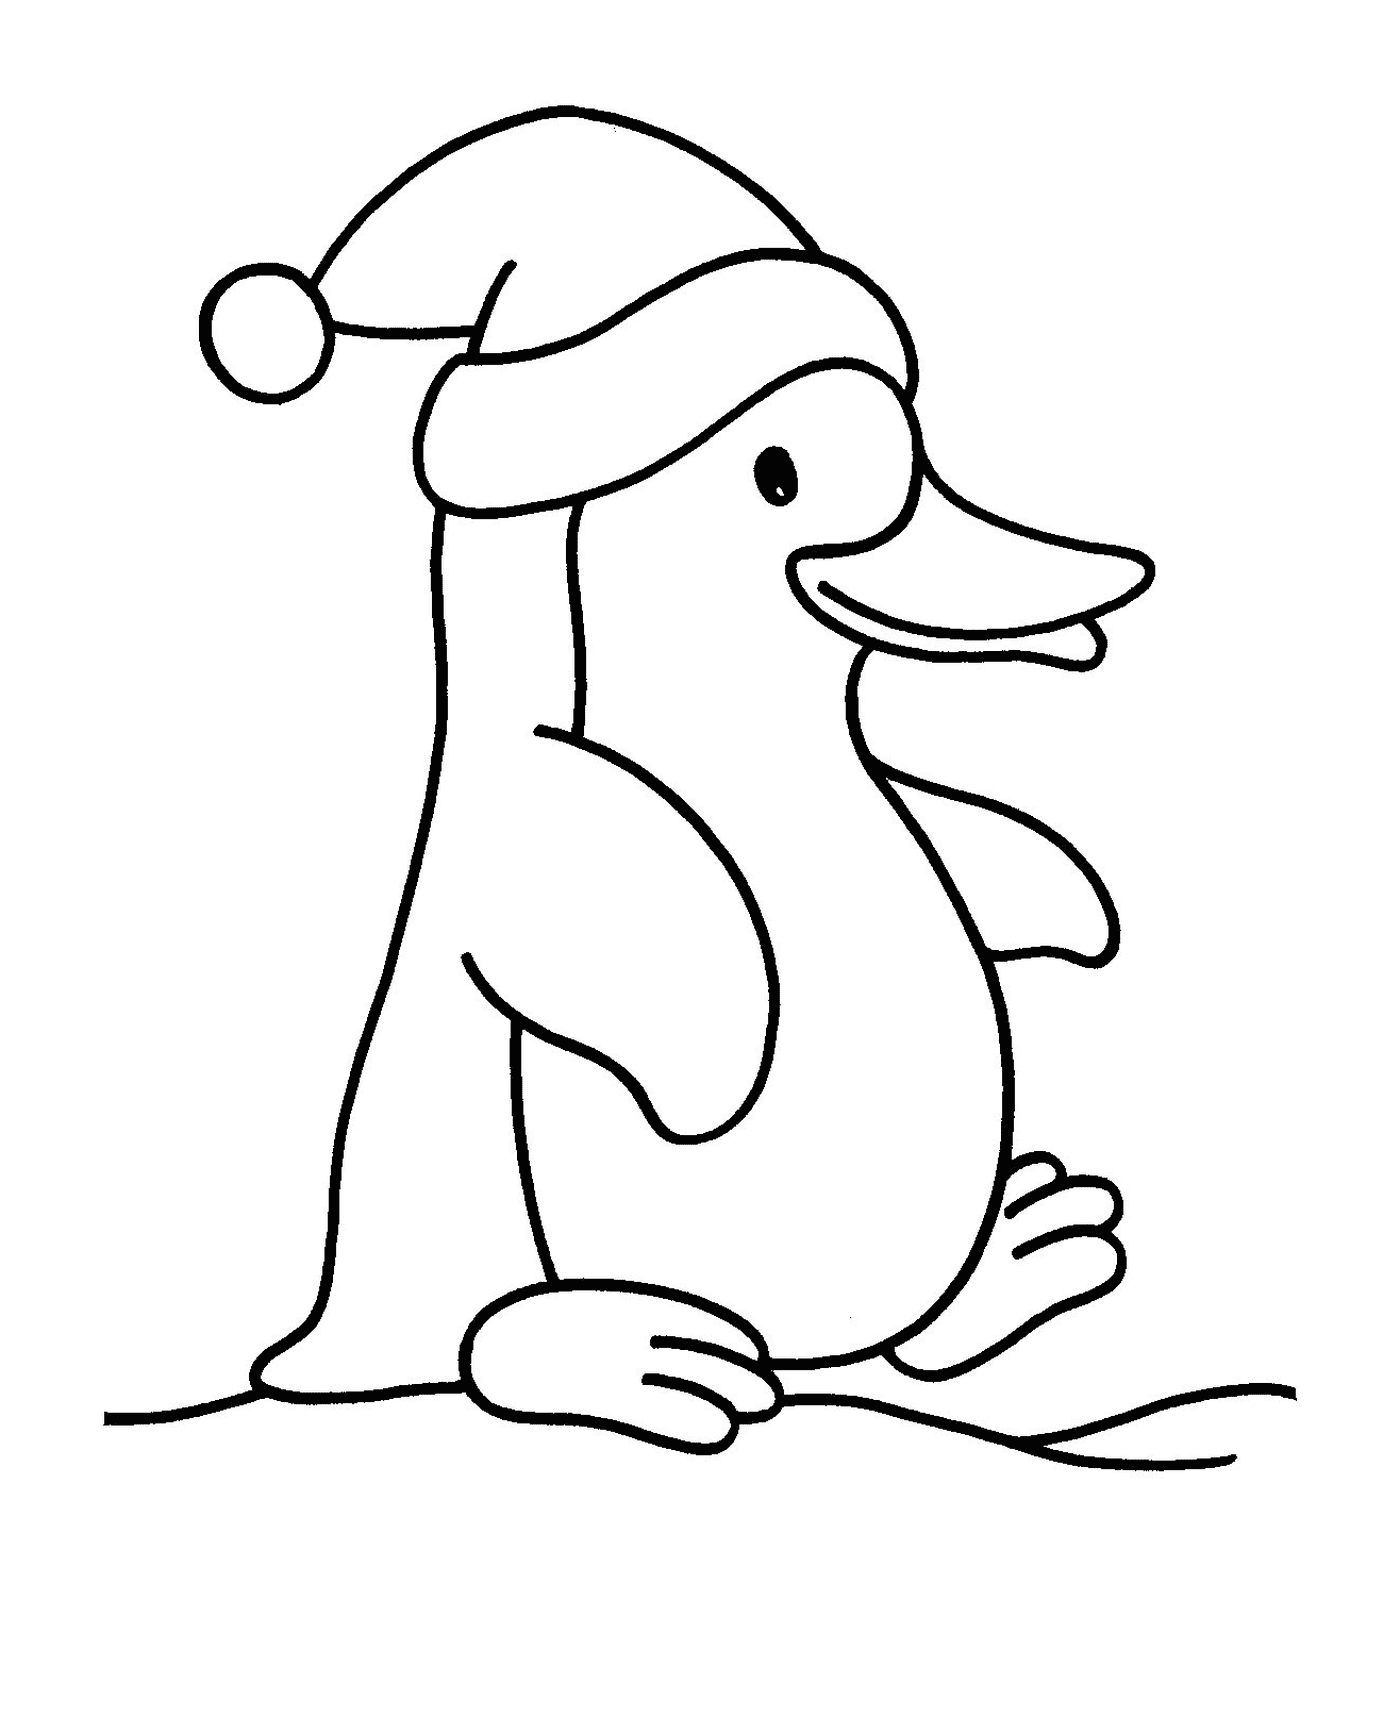  Pinguin de Natal encantador 